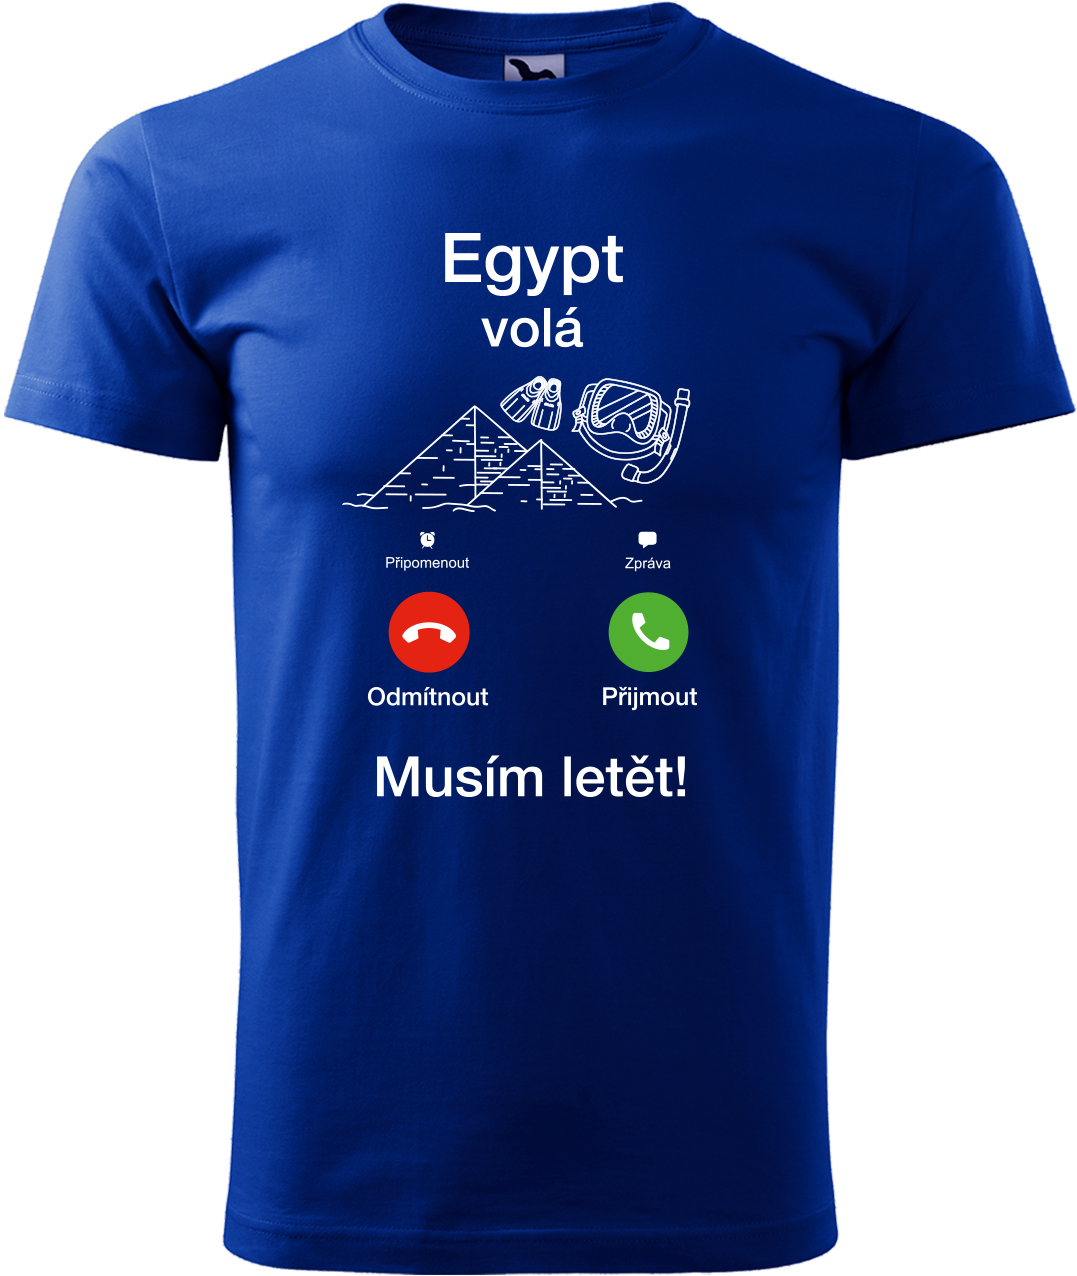 Pánské cestovatelské tričko - Egypt volá - musím letět! Velikost: L, Barva: Královská modrá (05), Střih: pánský